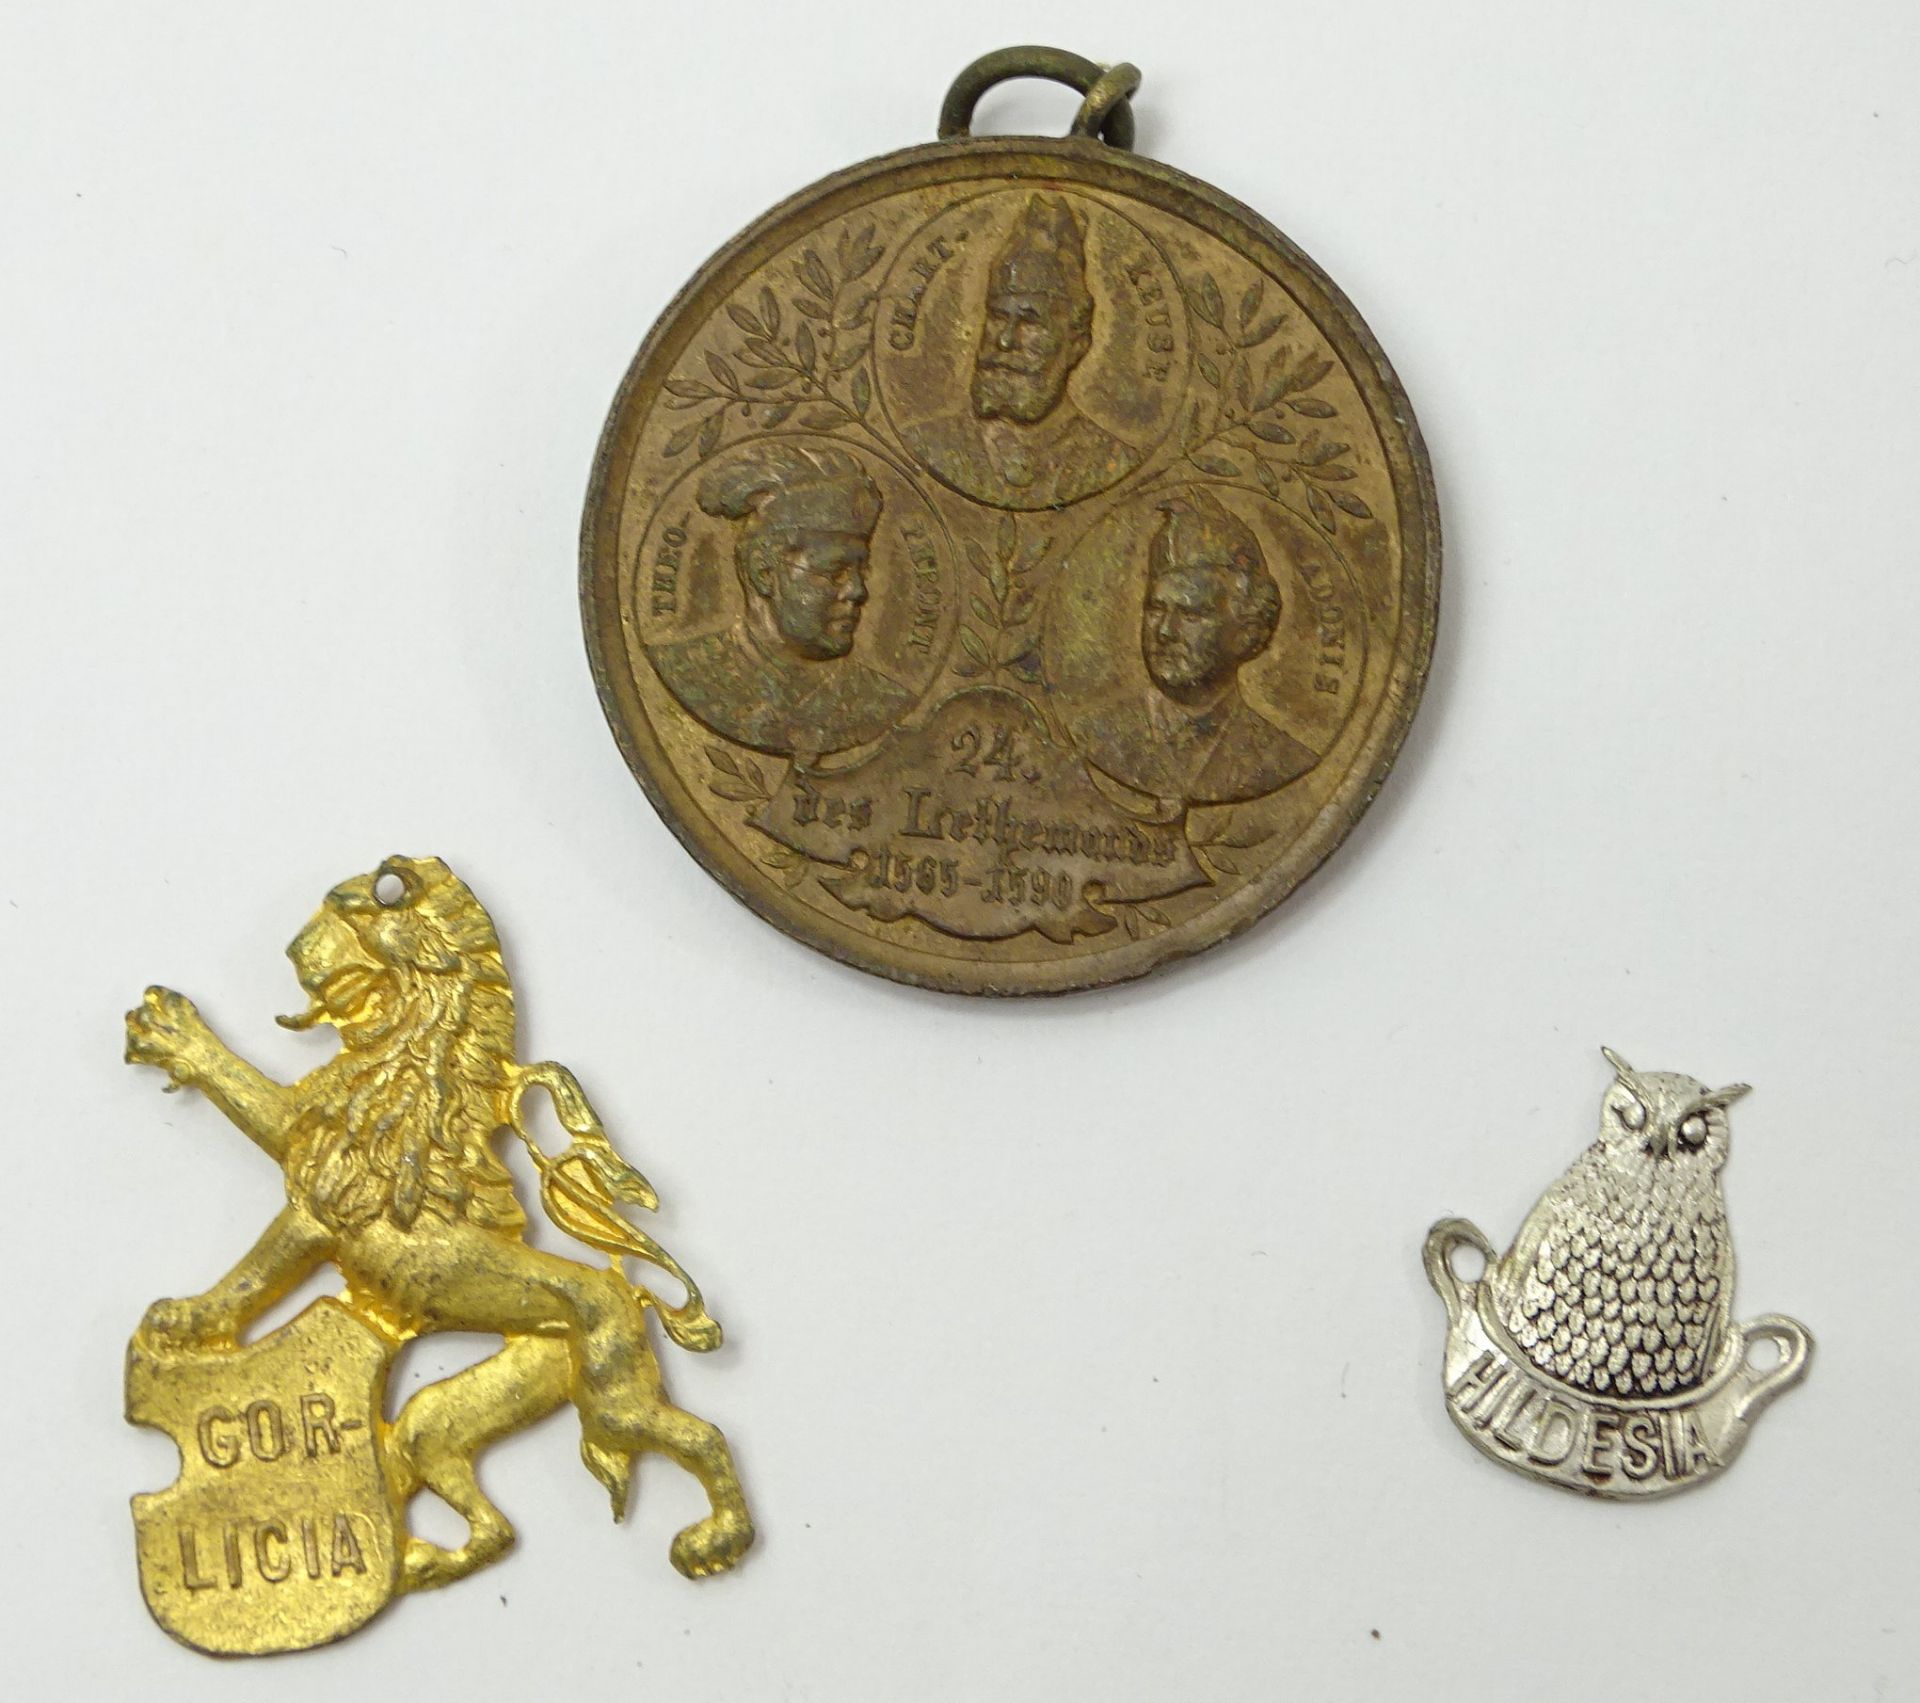 2 Anstecker und Medaille "Schlaraffia Berolina", 1890, Kupfer?, Ø 3,5 cm